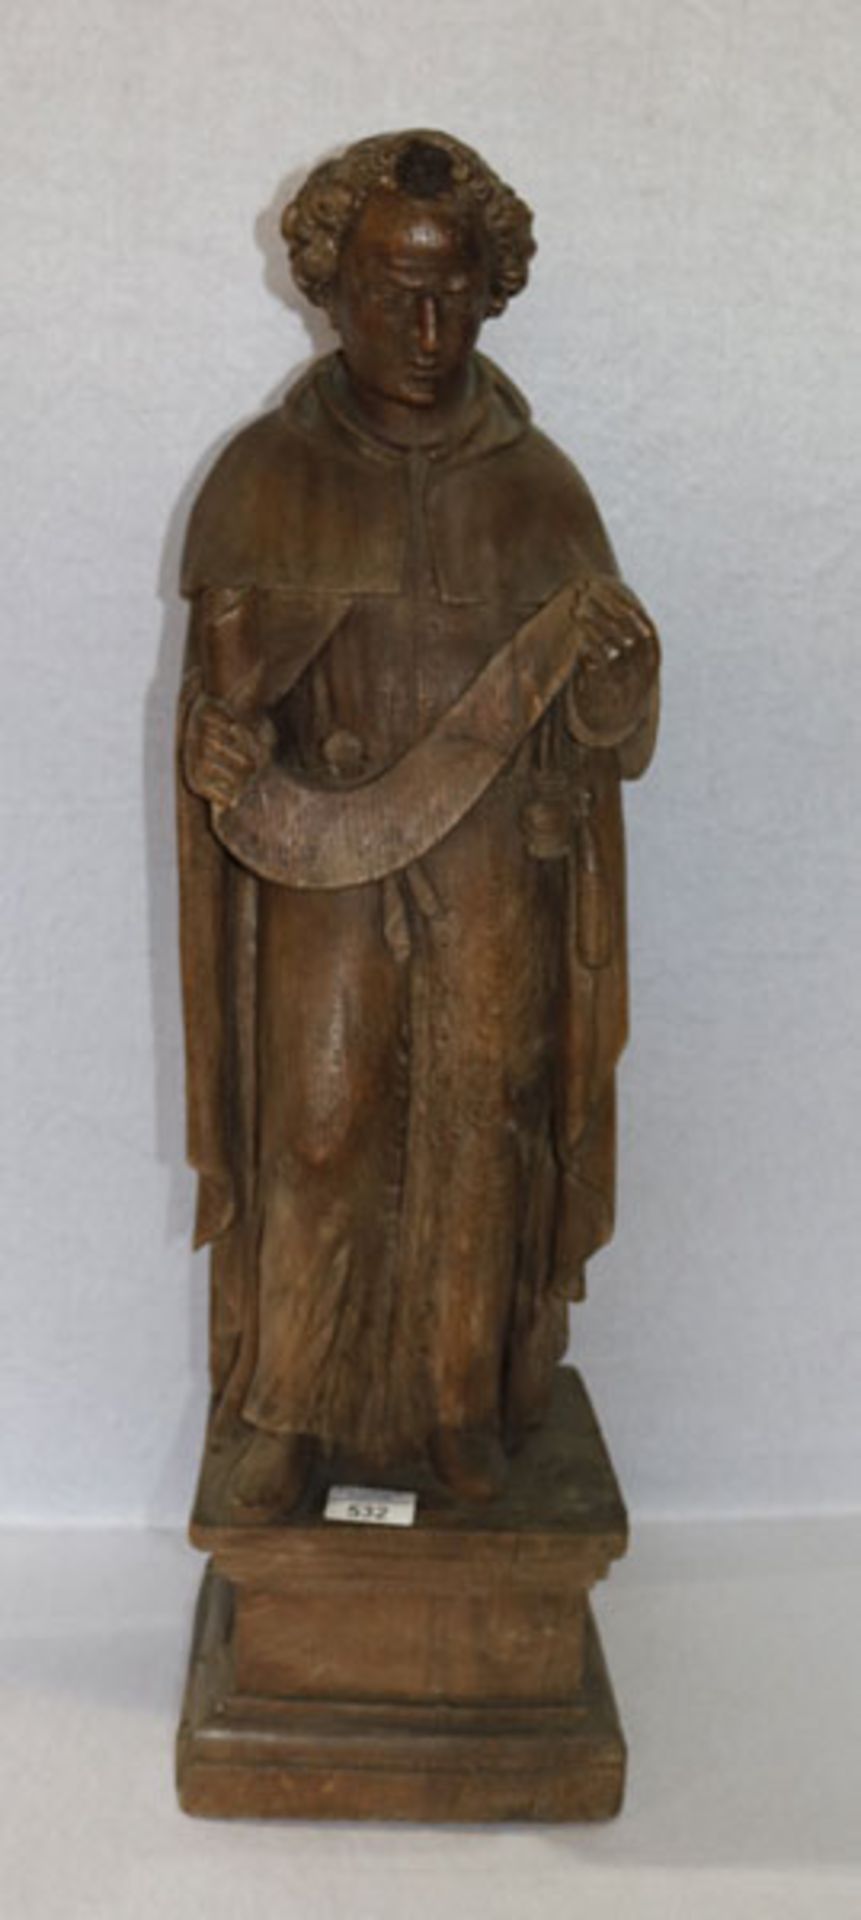 Holz Figurenskulptur 'Gelehrter', gebeizt, um 1800, H mit Sockel 74 cm, B 22 cm, T 18 cm,